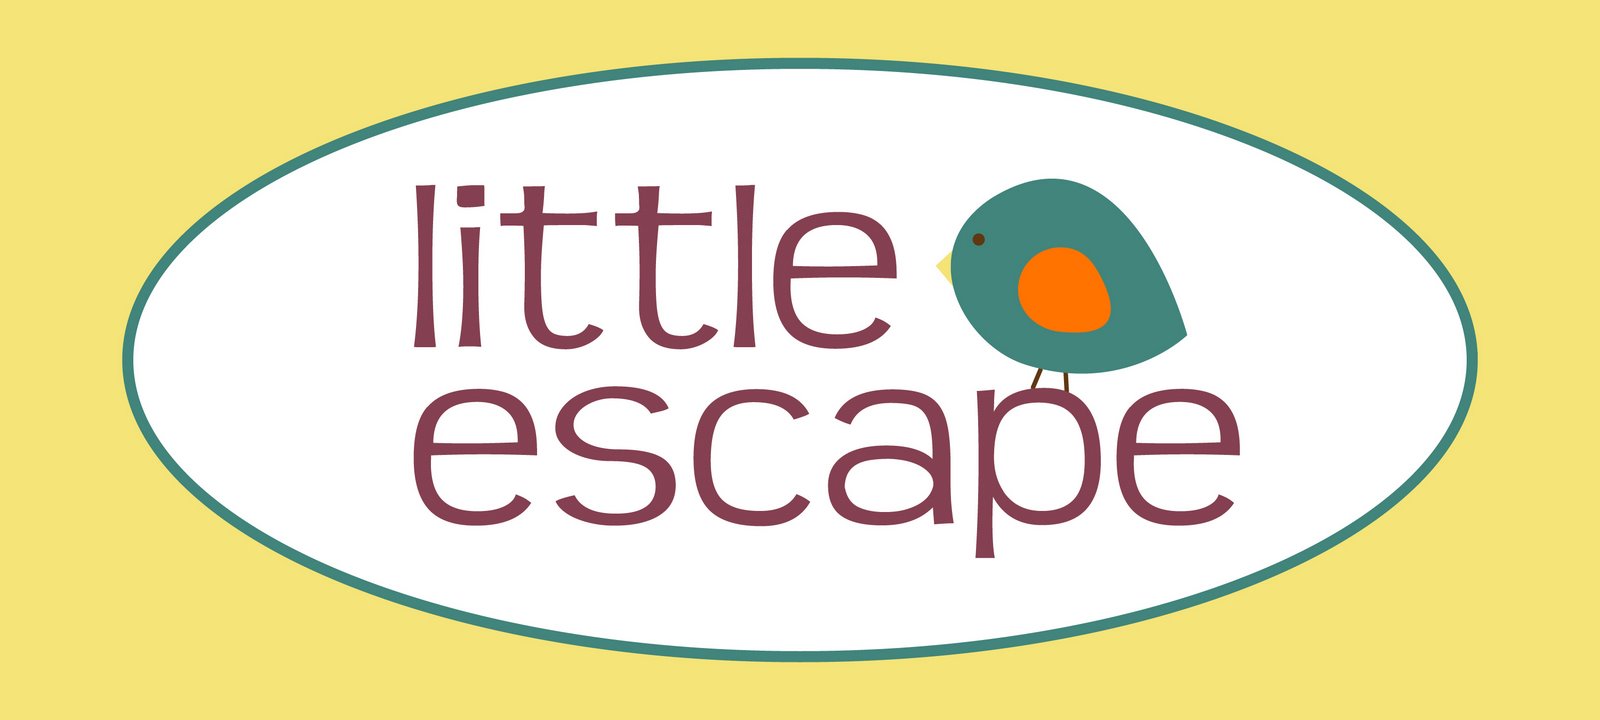 little escape